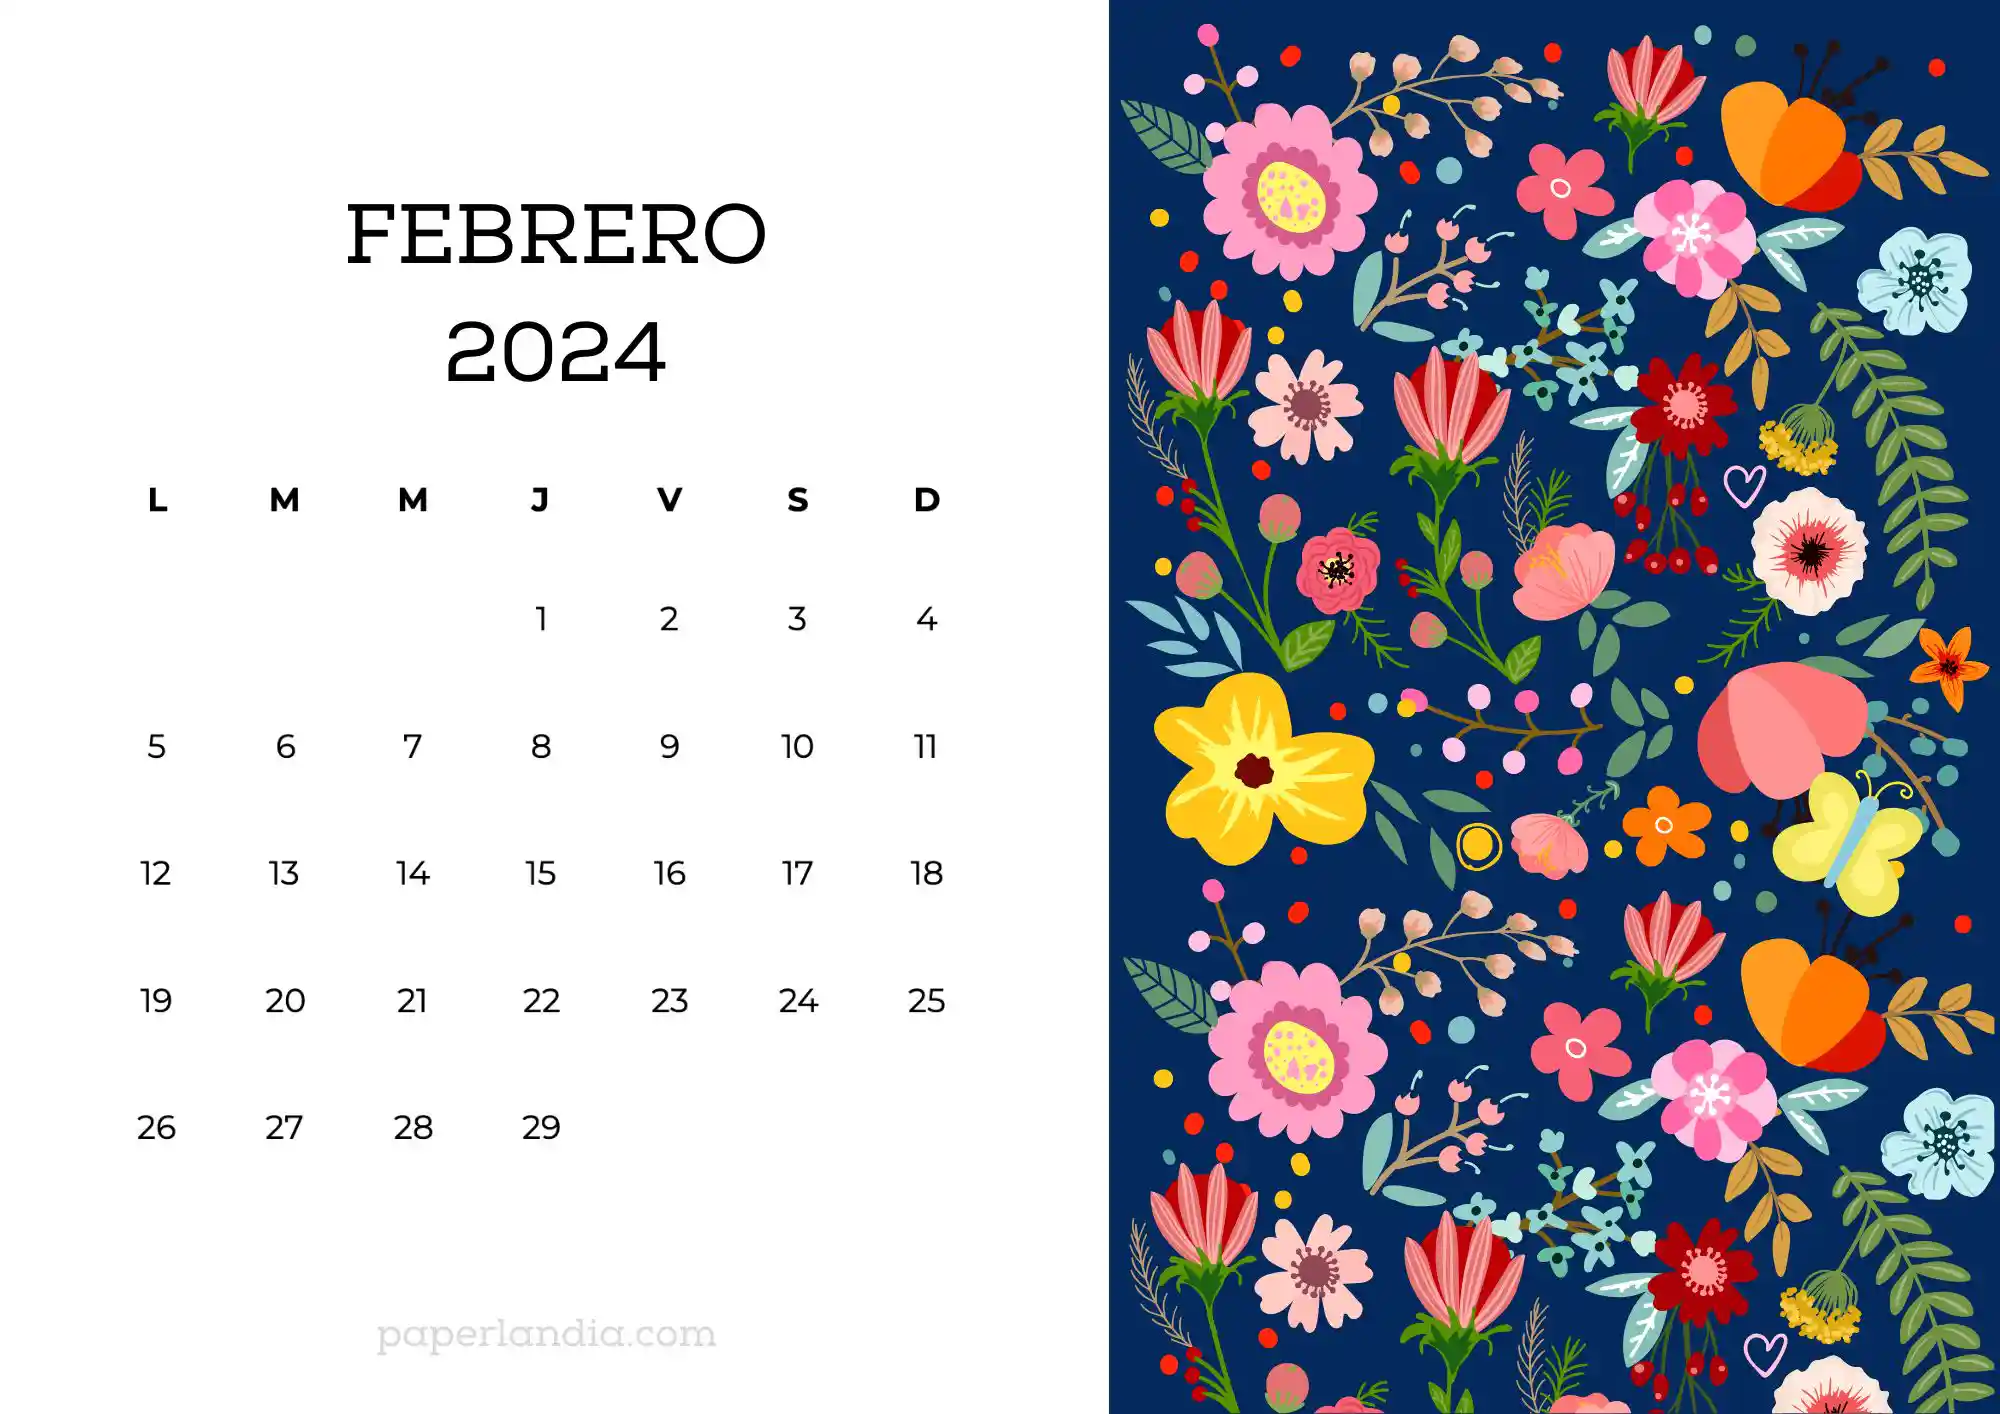 Calendario febrero 2024 horizontal con flores escandinavas fondo azul